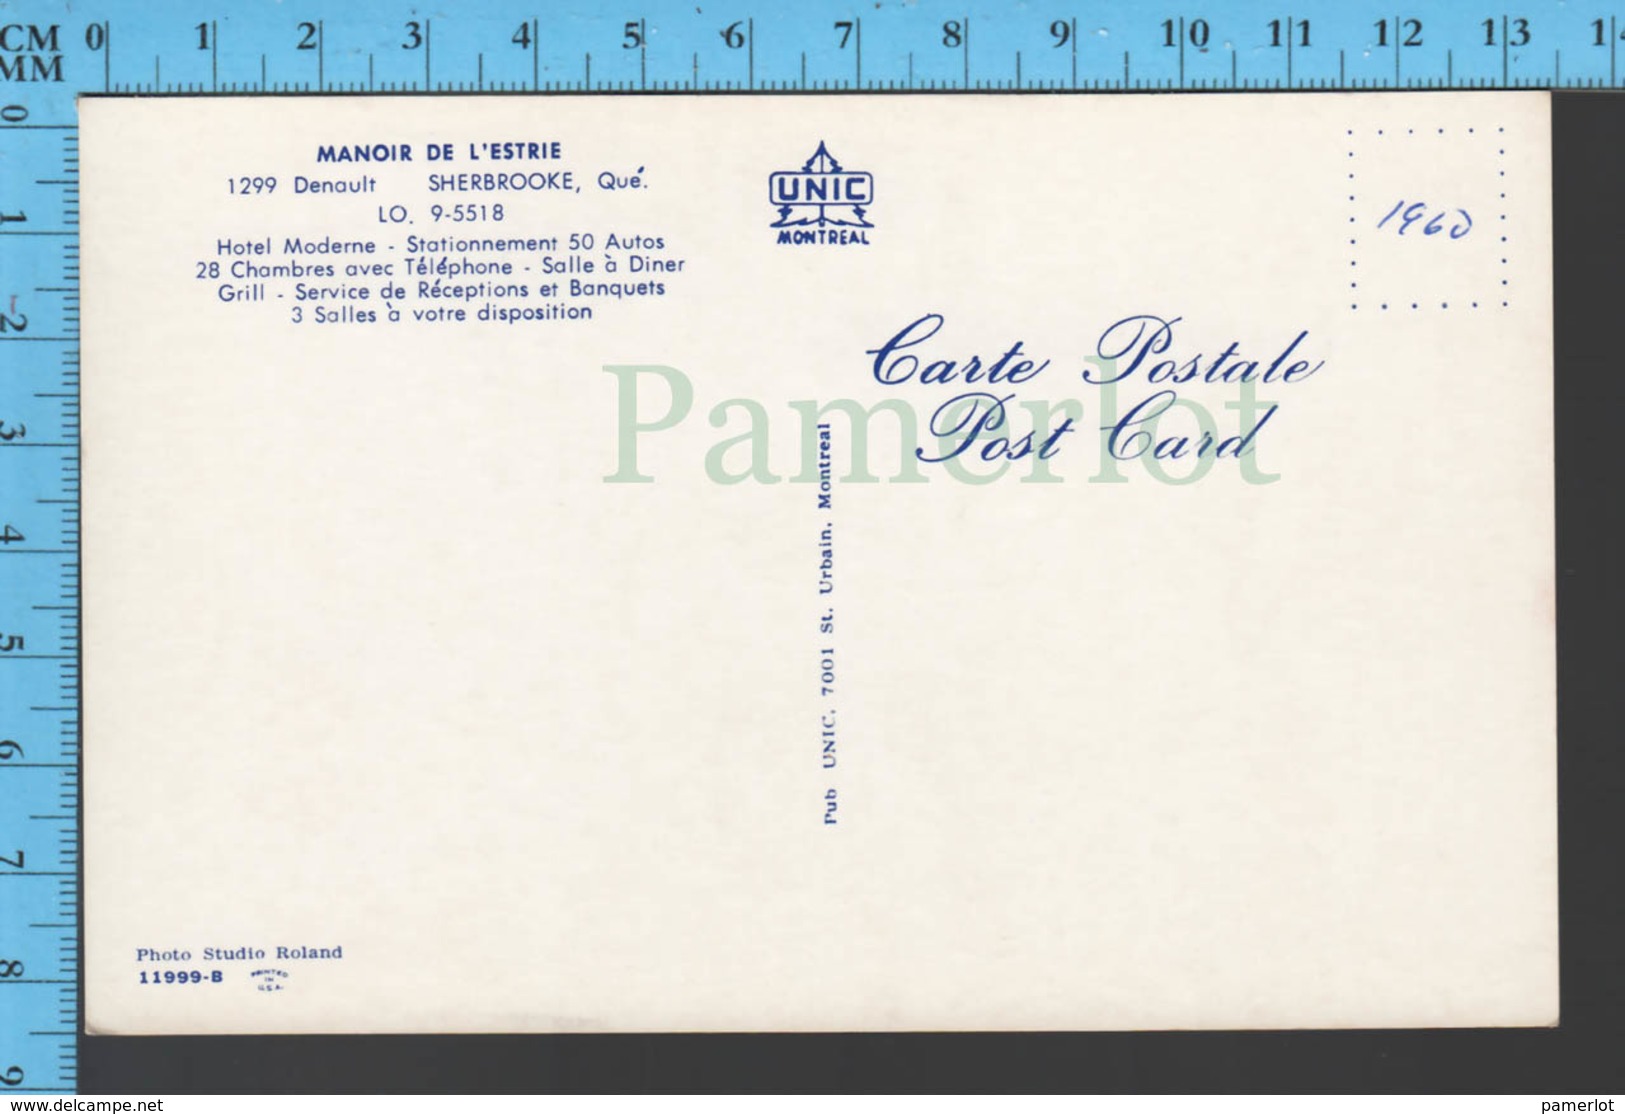 Sherbrooke Quebec - Interieur Du Manoir De L'estrie - Pub: Unic - Post Card Canada - Sherbrooke